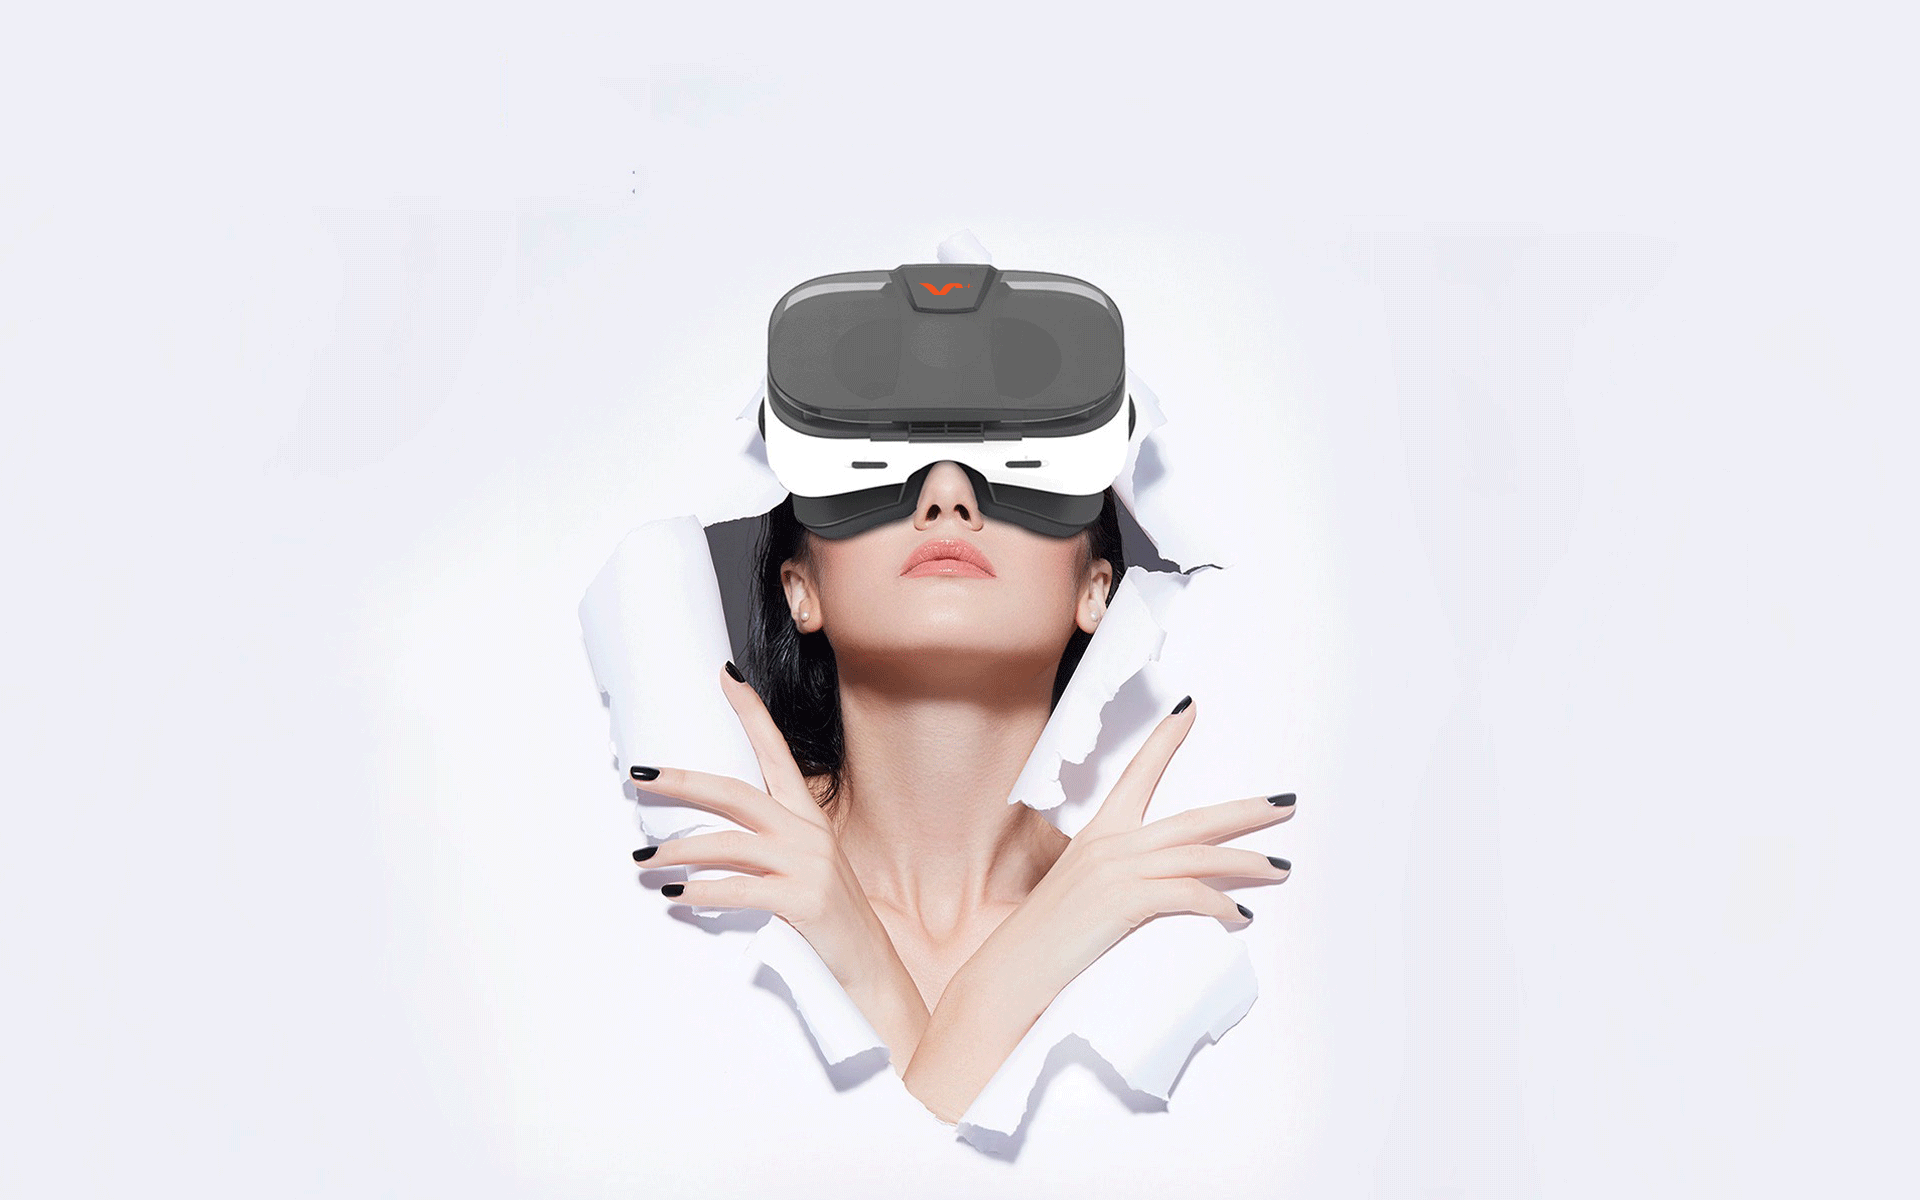 Виртуальная реальность девушки. VR шлем 360max. Очки виртуальной реальности 360 VR. Шлем виртуальной реальности 3glasses s1. Девушка в очках виртуальной реальности.